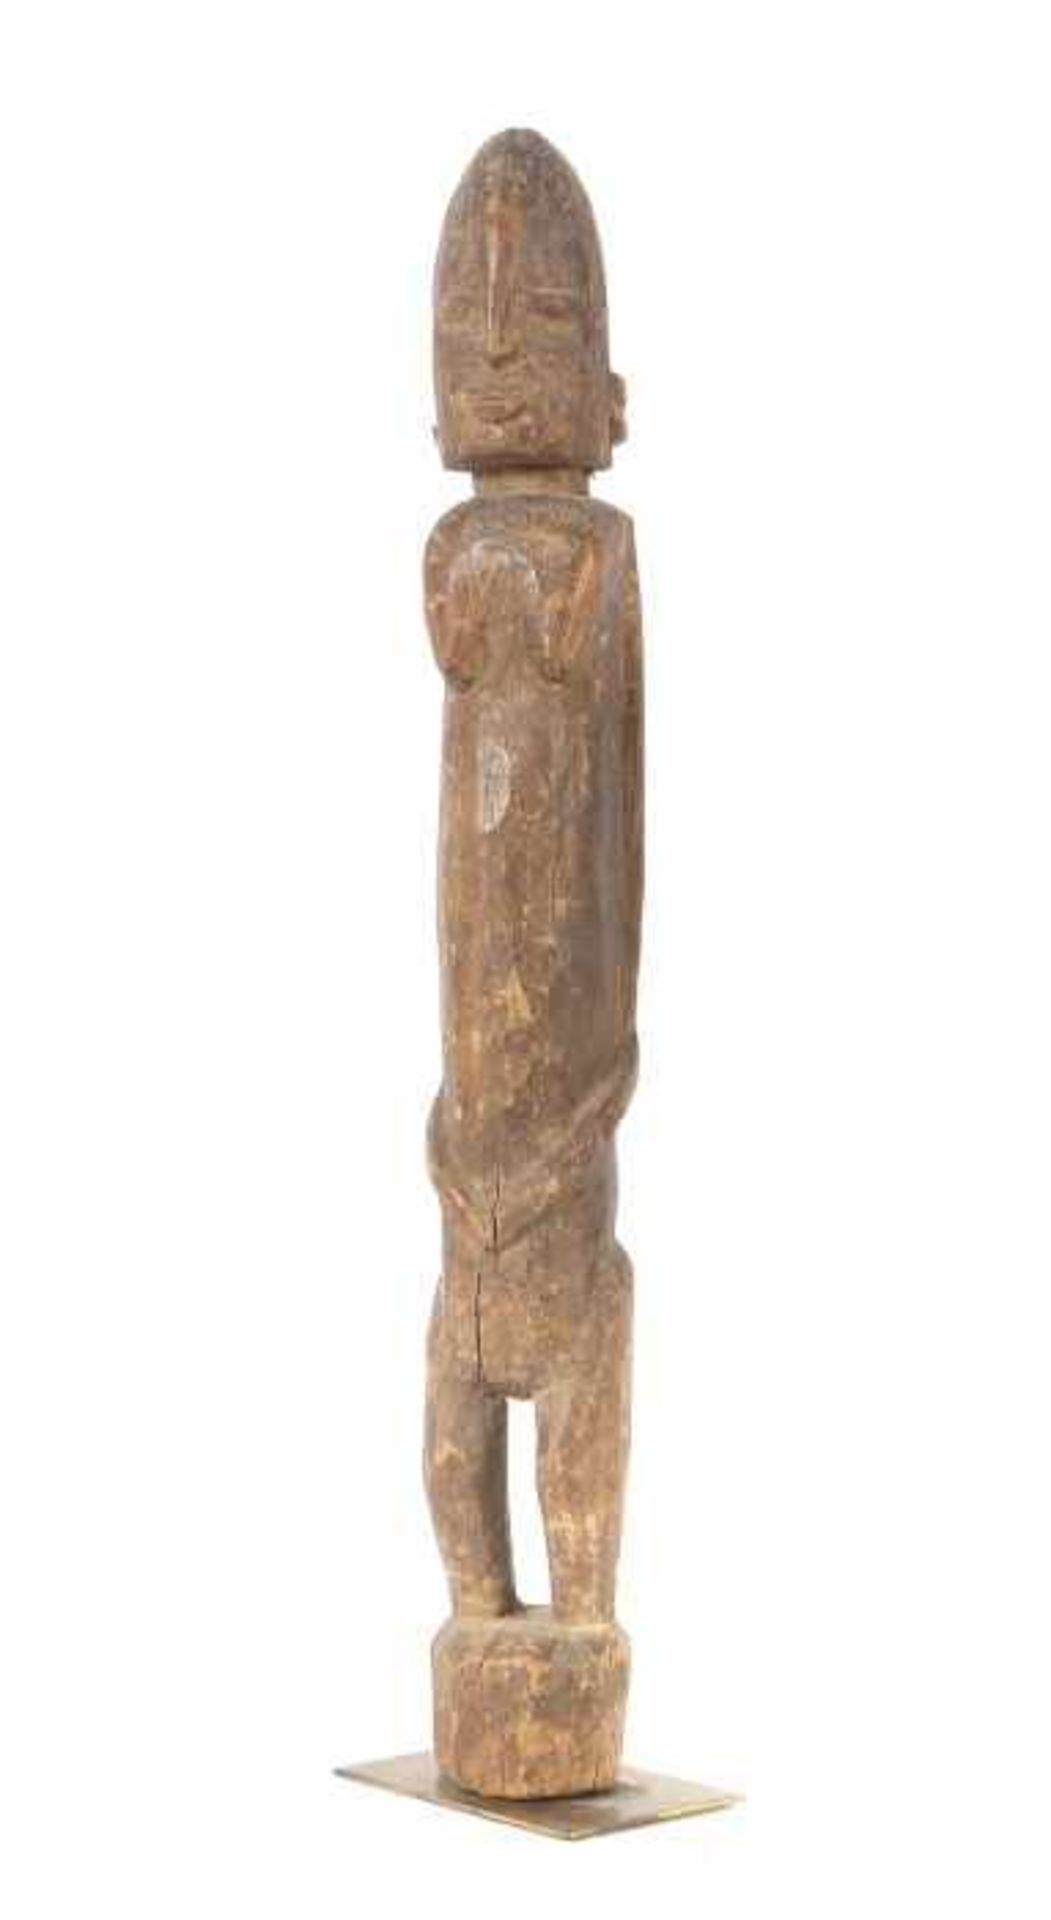 Weibliche StandfigurMali, Stamm der Dogon, ohne Füße auf Sockel stehende geschnitzte Holzfigur, Arme